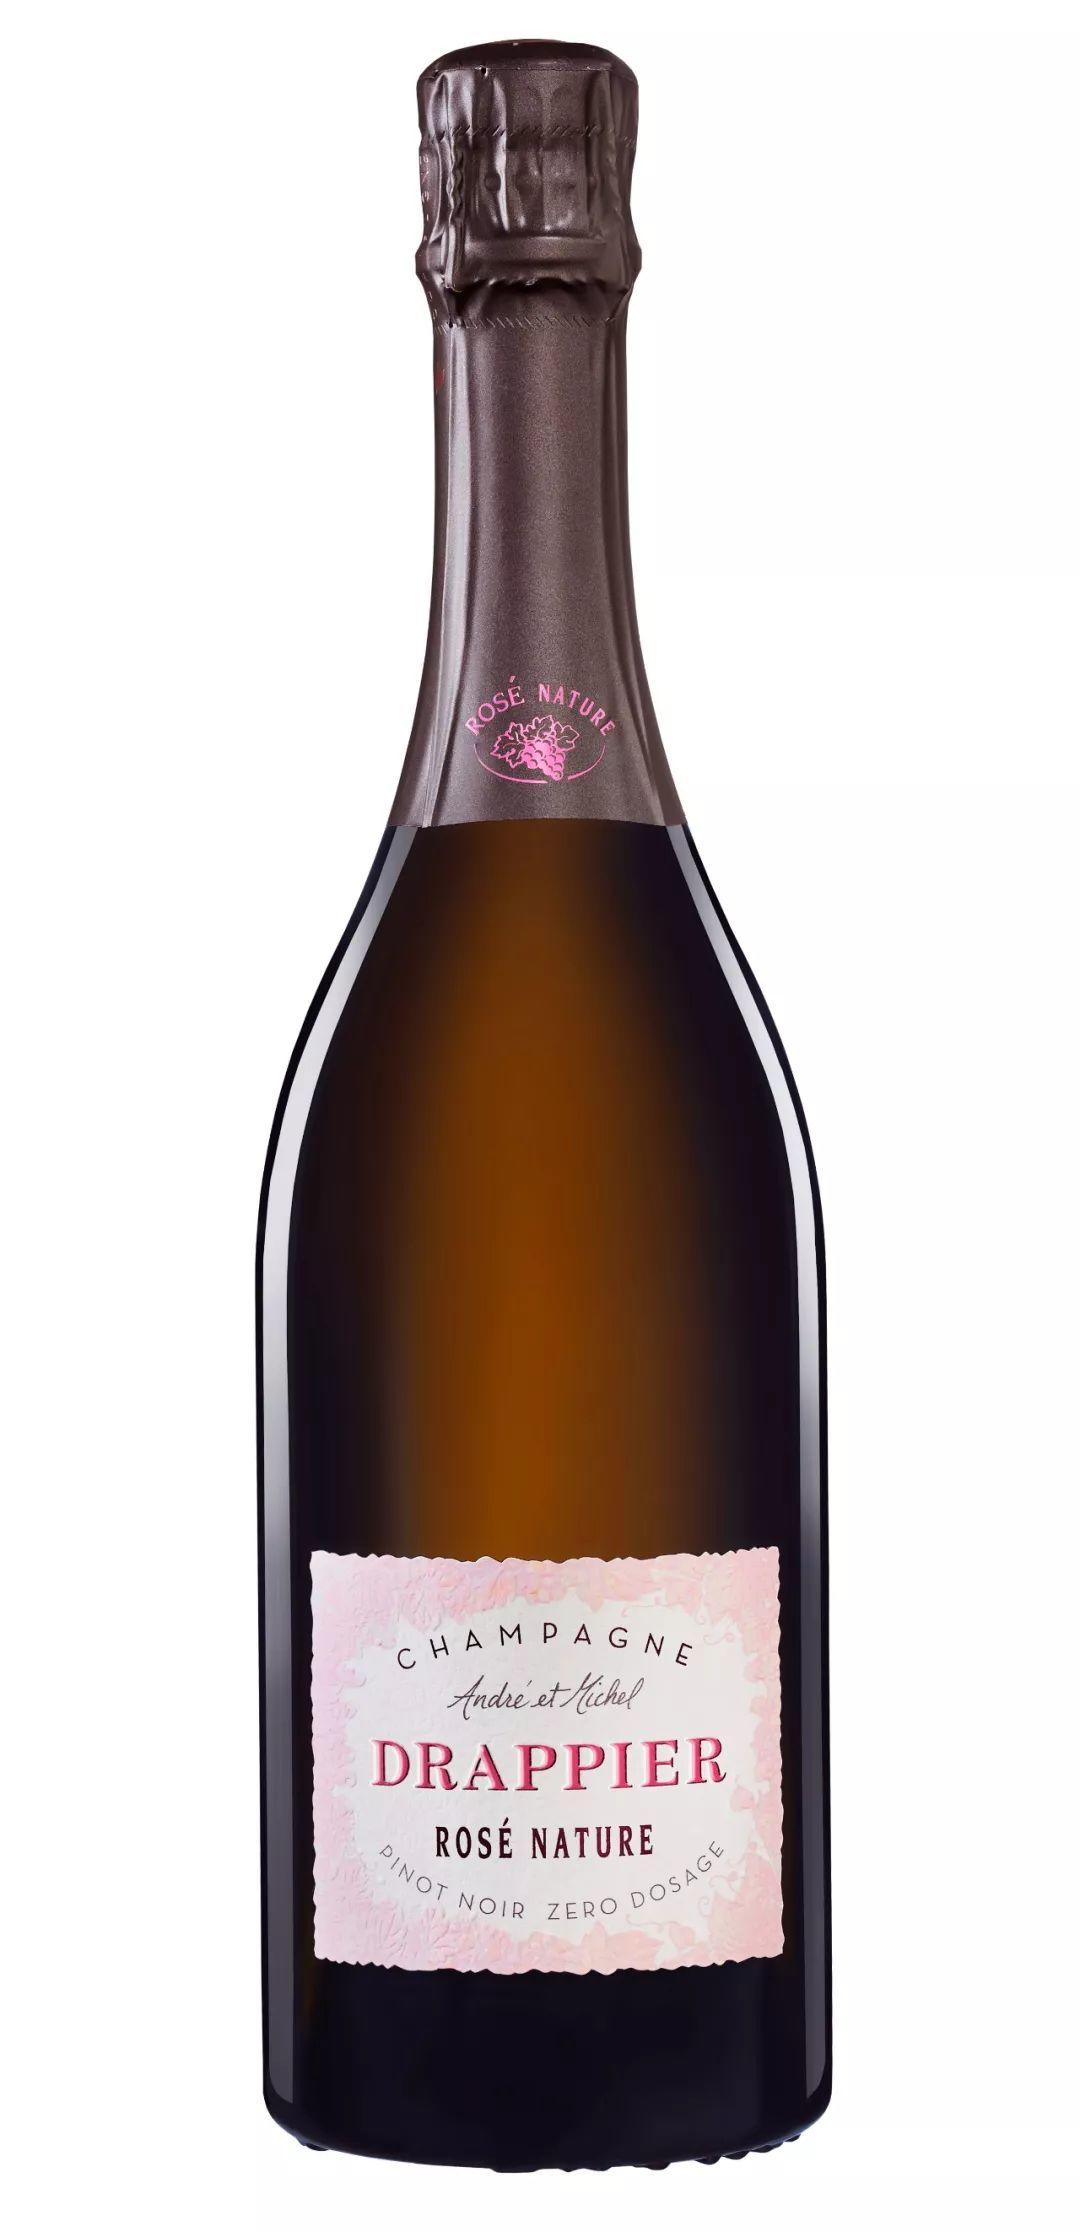 2019 展商介绍 | Champagne Drappier